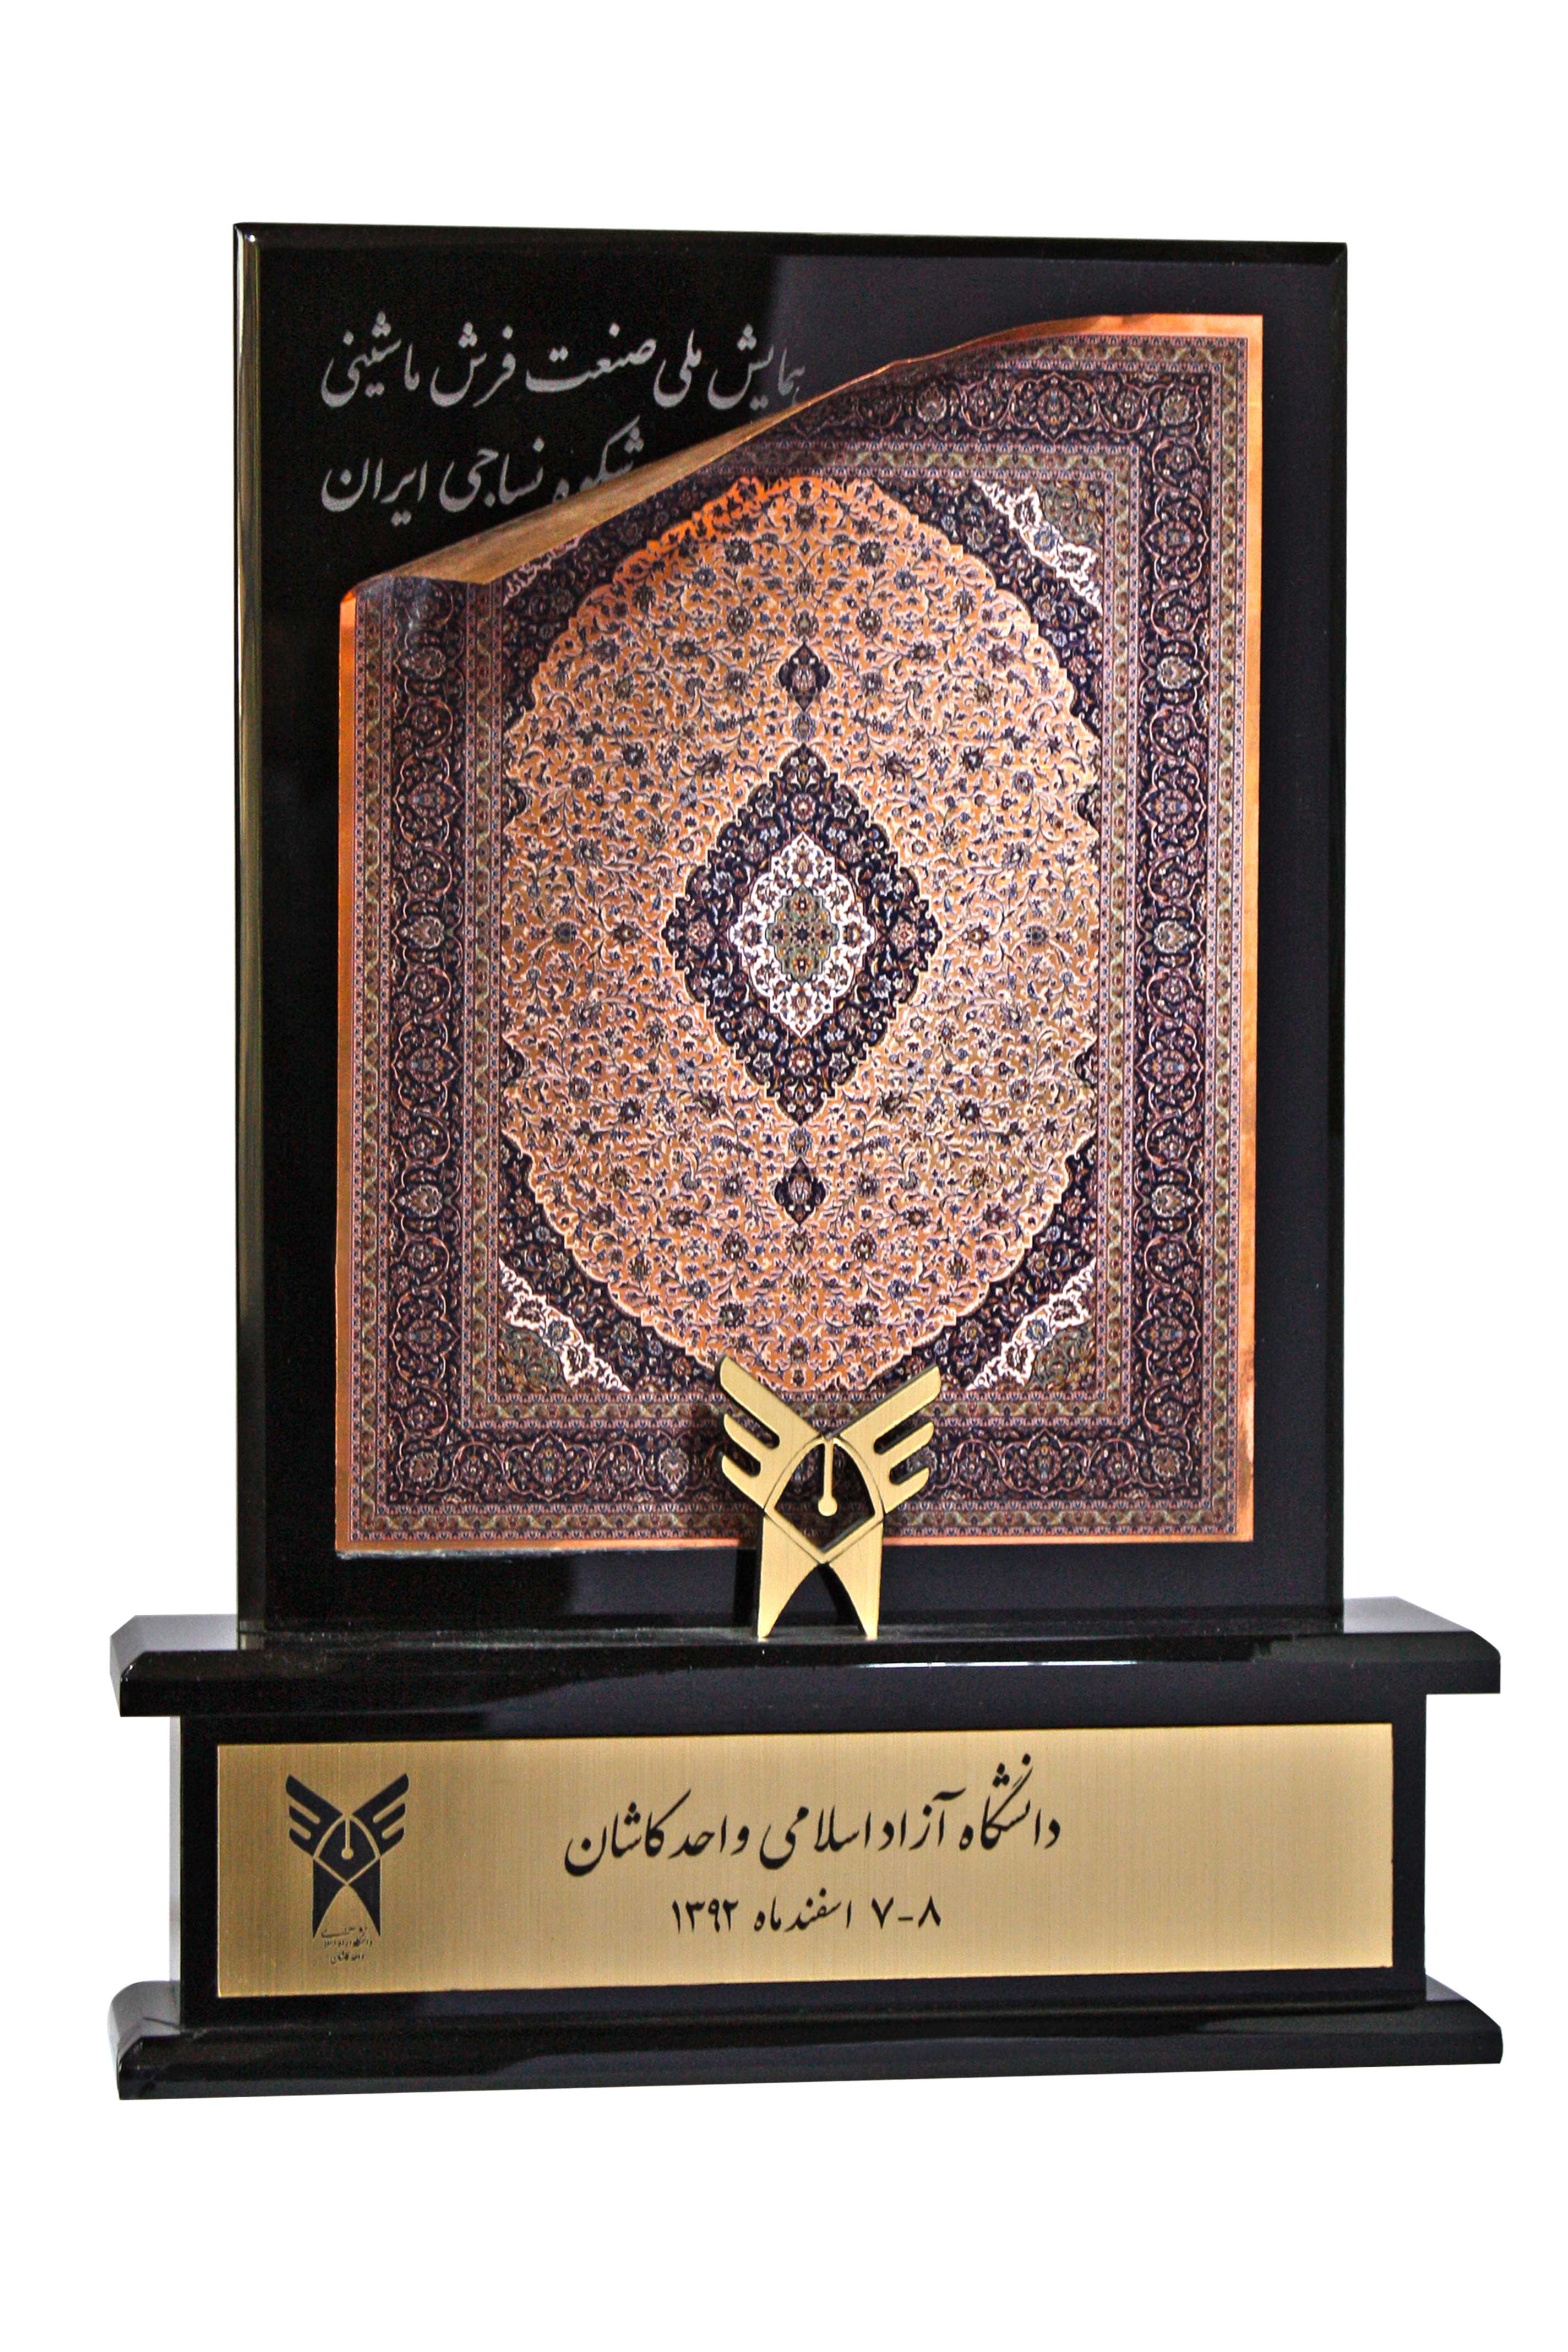 تندیس حضور در همایش ملی صنعت فرش ماشینی از دانشگاه آزاد اسلامی 1392